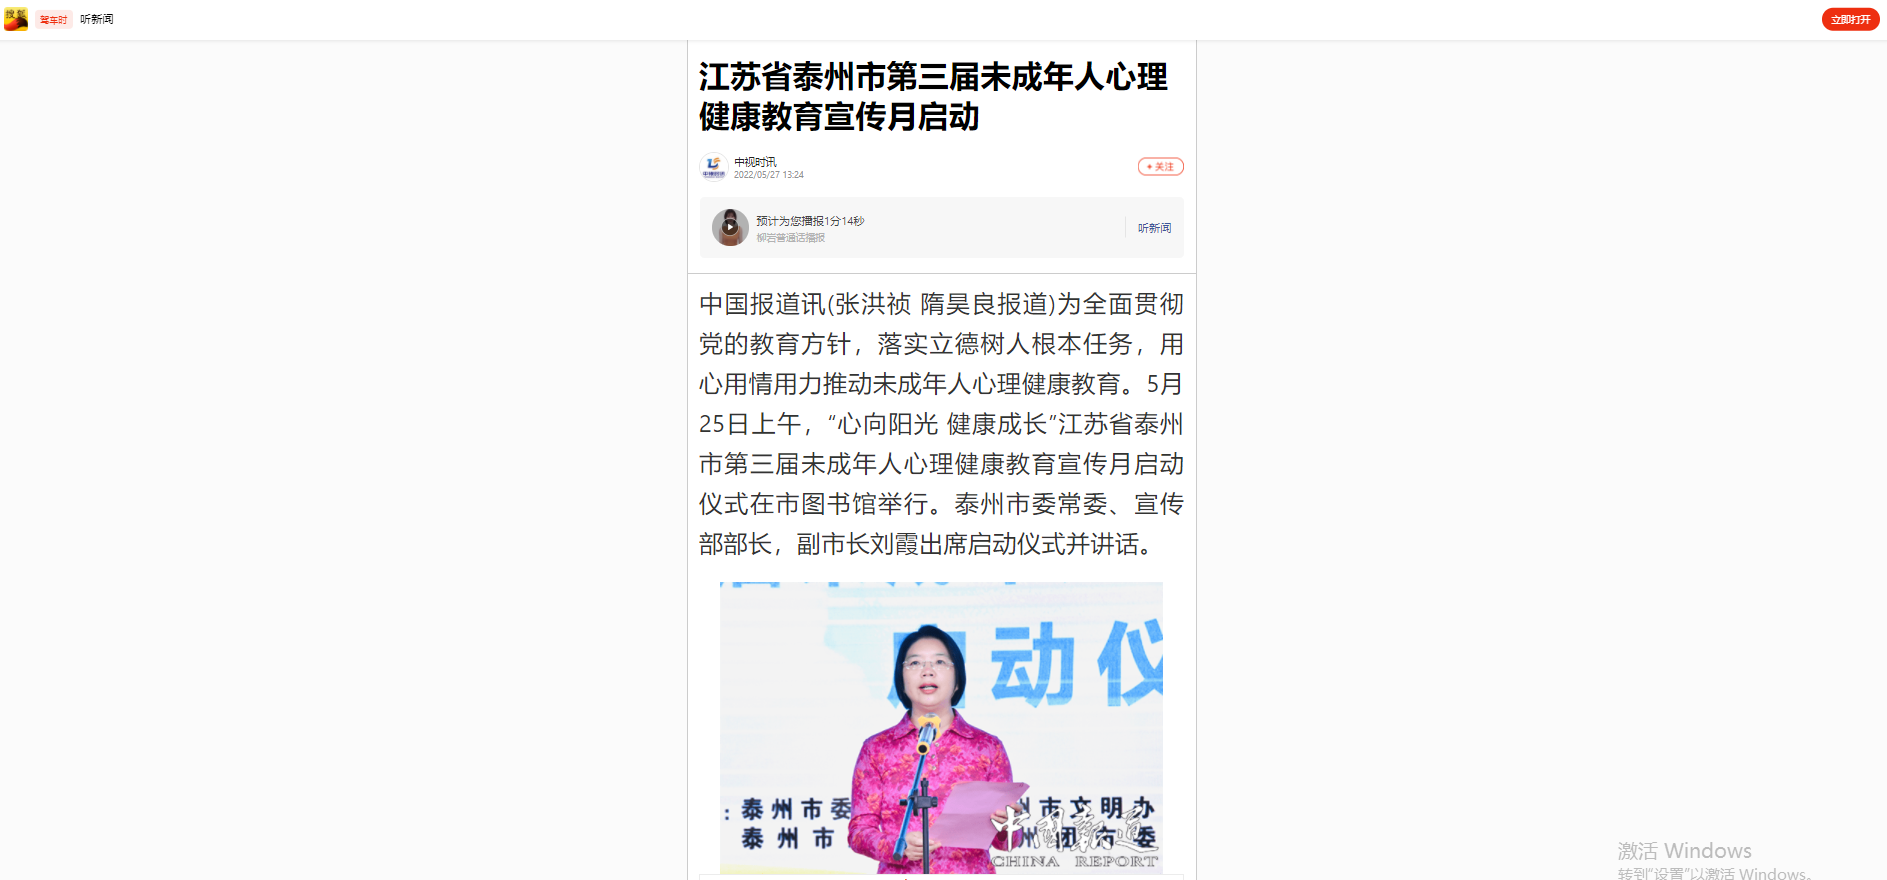 【搜狐新闻】江苏省泰州市第三届未成年人心理健康教育宣传月启动